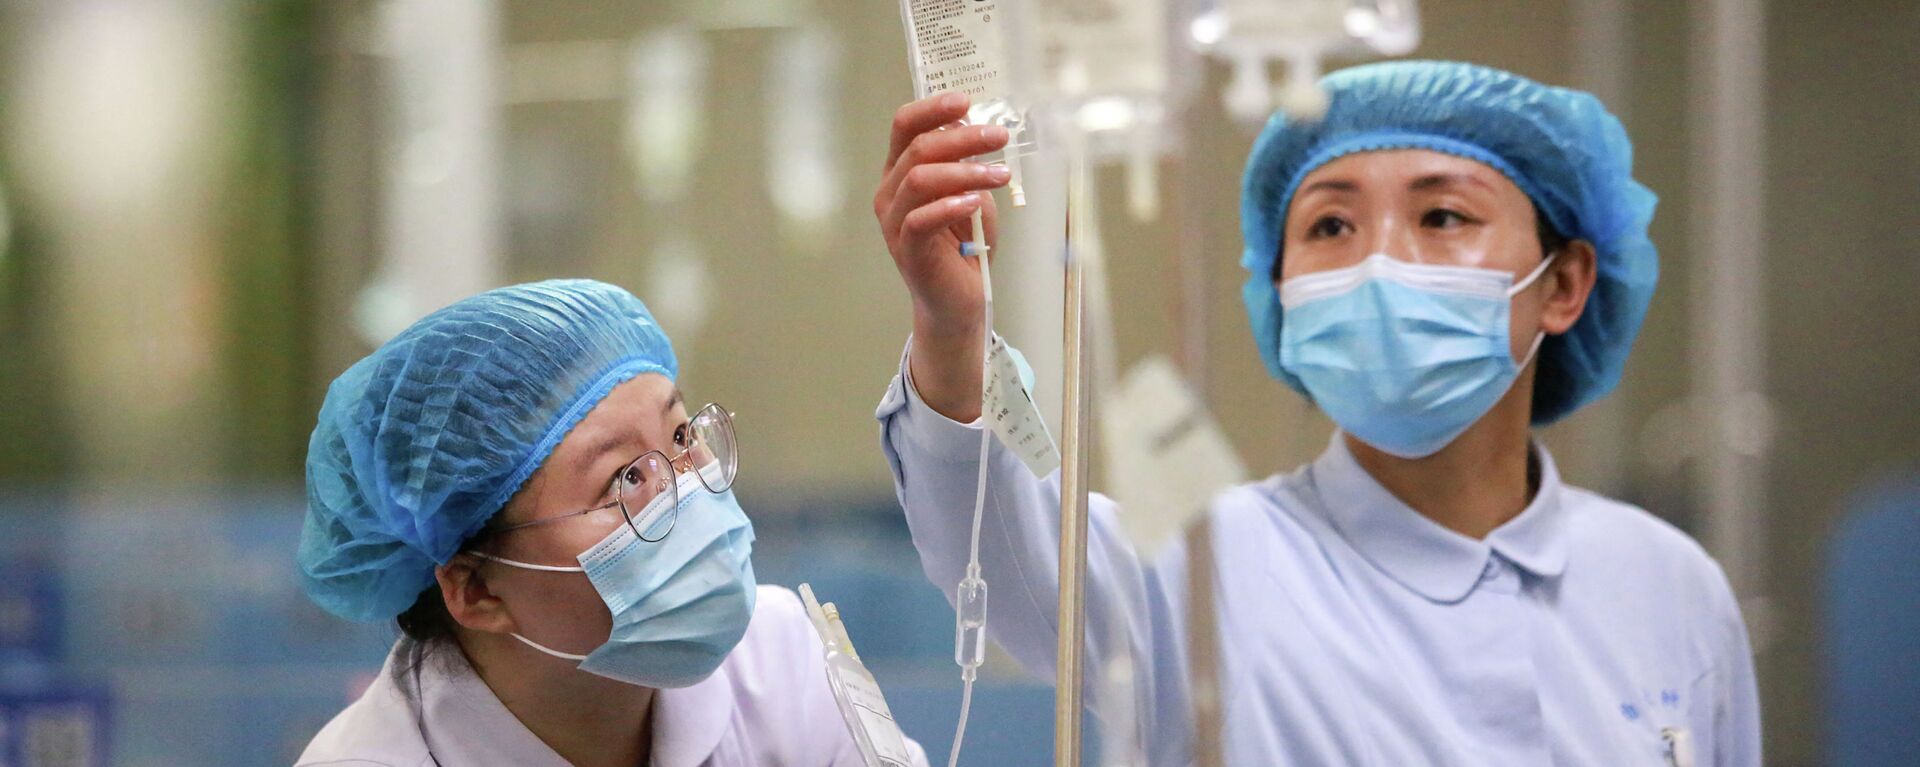 Медсестры в защитных костюмах поправляют капельницы в больнице с коронавирусом - Sputnik Қазақстан, 1920, 02.08.2021